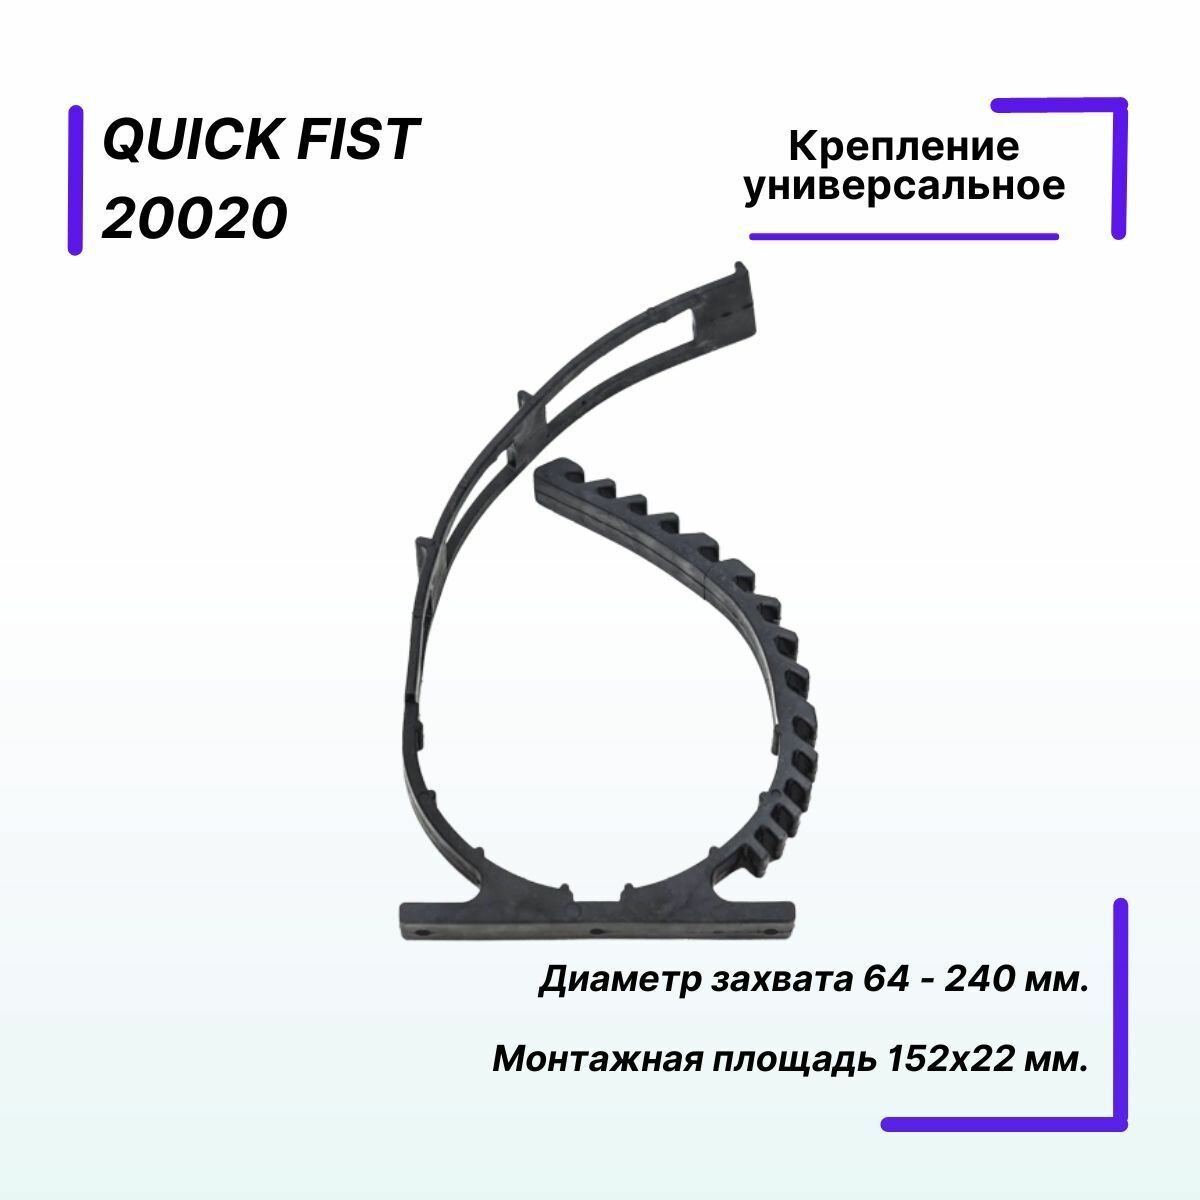 Крепление универсальное Quick Fist диаметр захвата 64 - 240мм